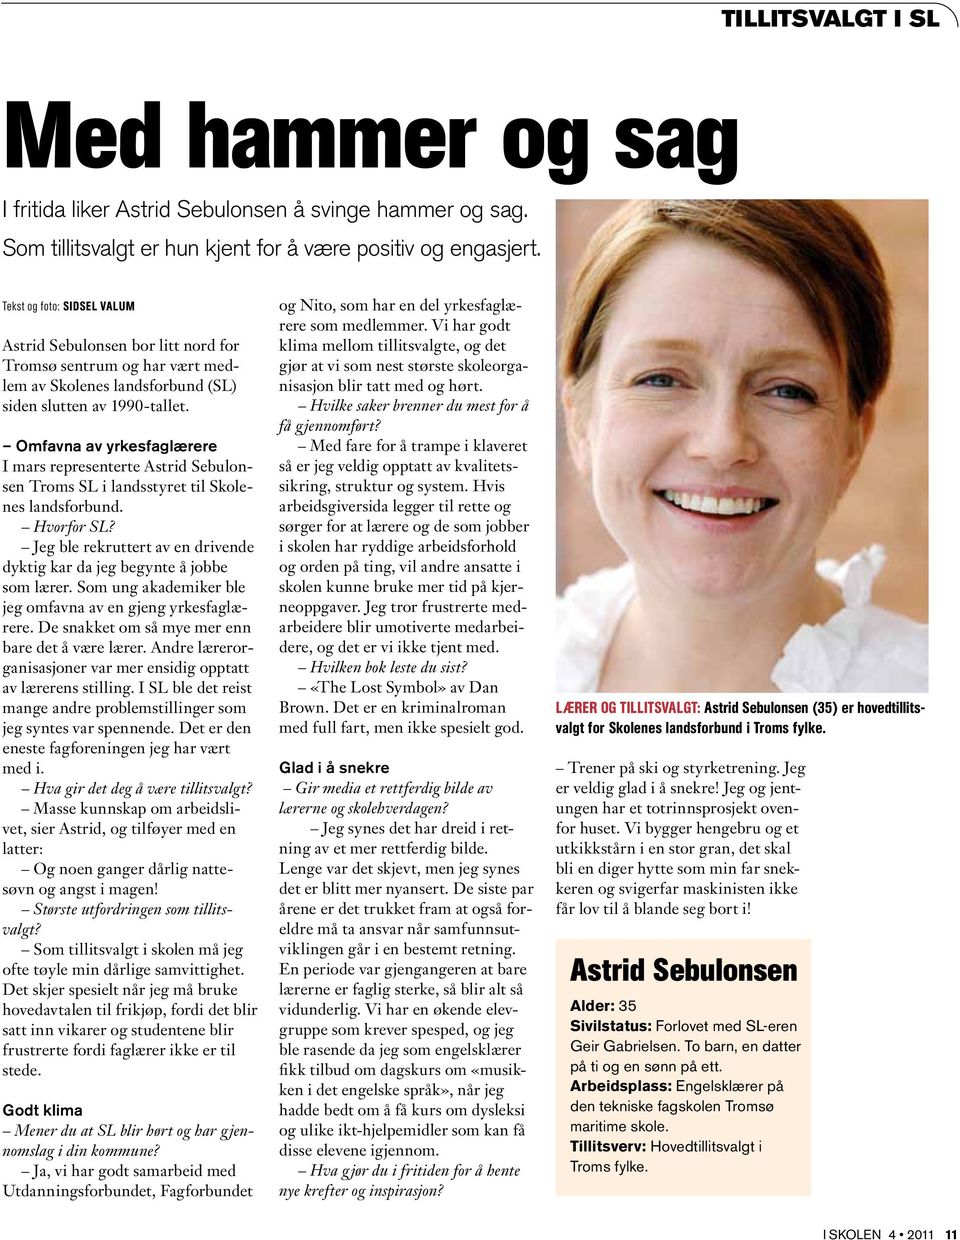 Omfavna av yrkesfaglærere I mars representerte Astrid Sebulonsen Troms SL i landsstyret til Skolenes landsforbund. Hvorfor SL?